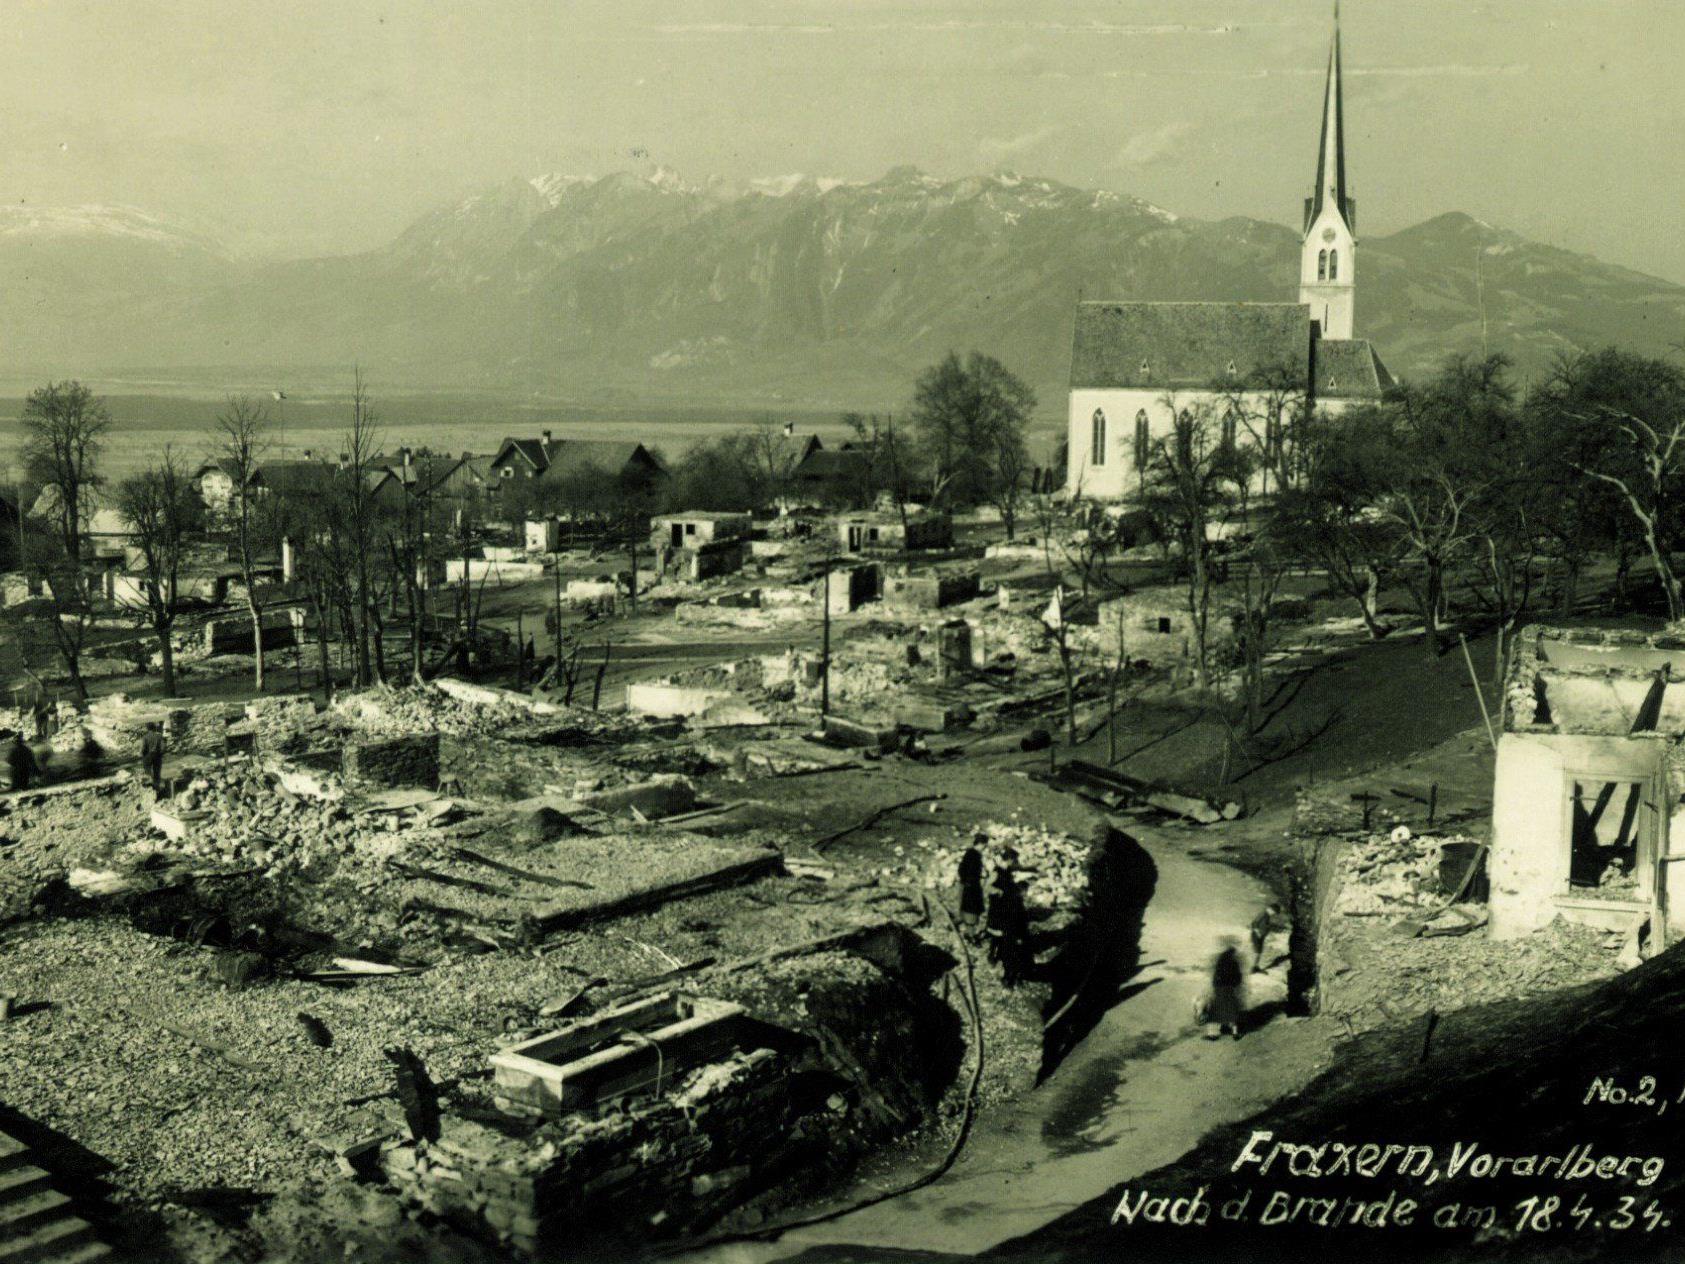 Ausstellung der Feuerwehr im Jakob-Summer-Saal am 25., 26. und 27. April. Bei der Katastrophe in Fraxern 1934 brannte das halbe Dorf (34 Gebäude) nieder. 1 Todesopfer.